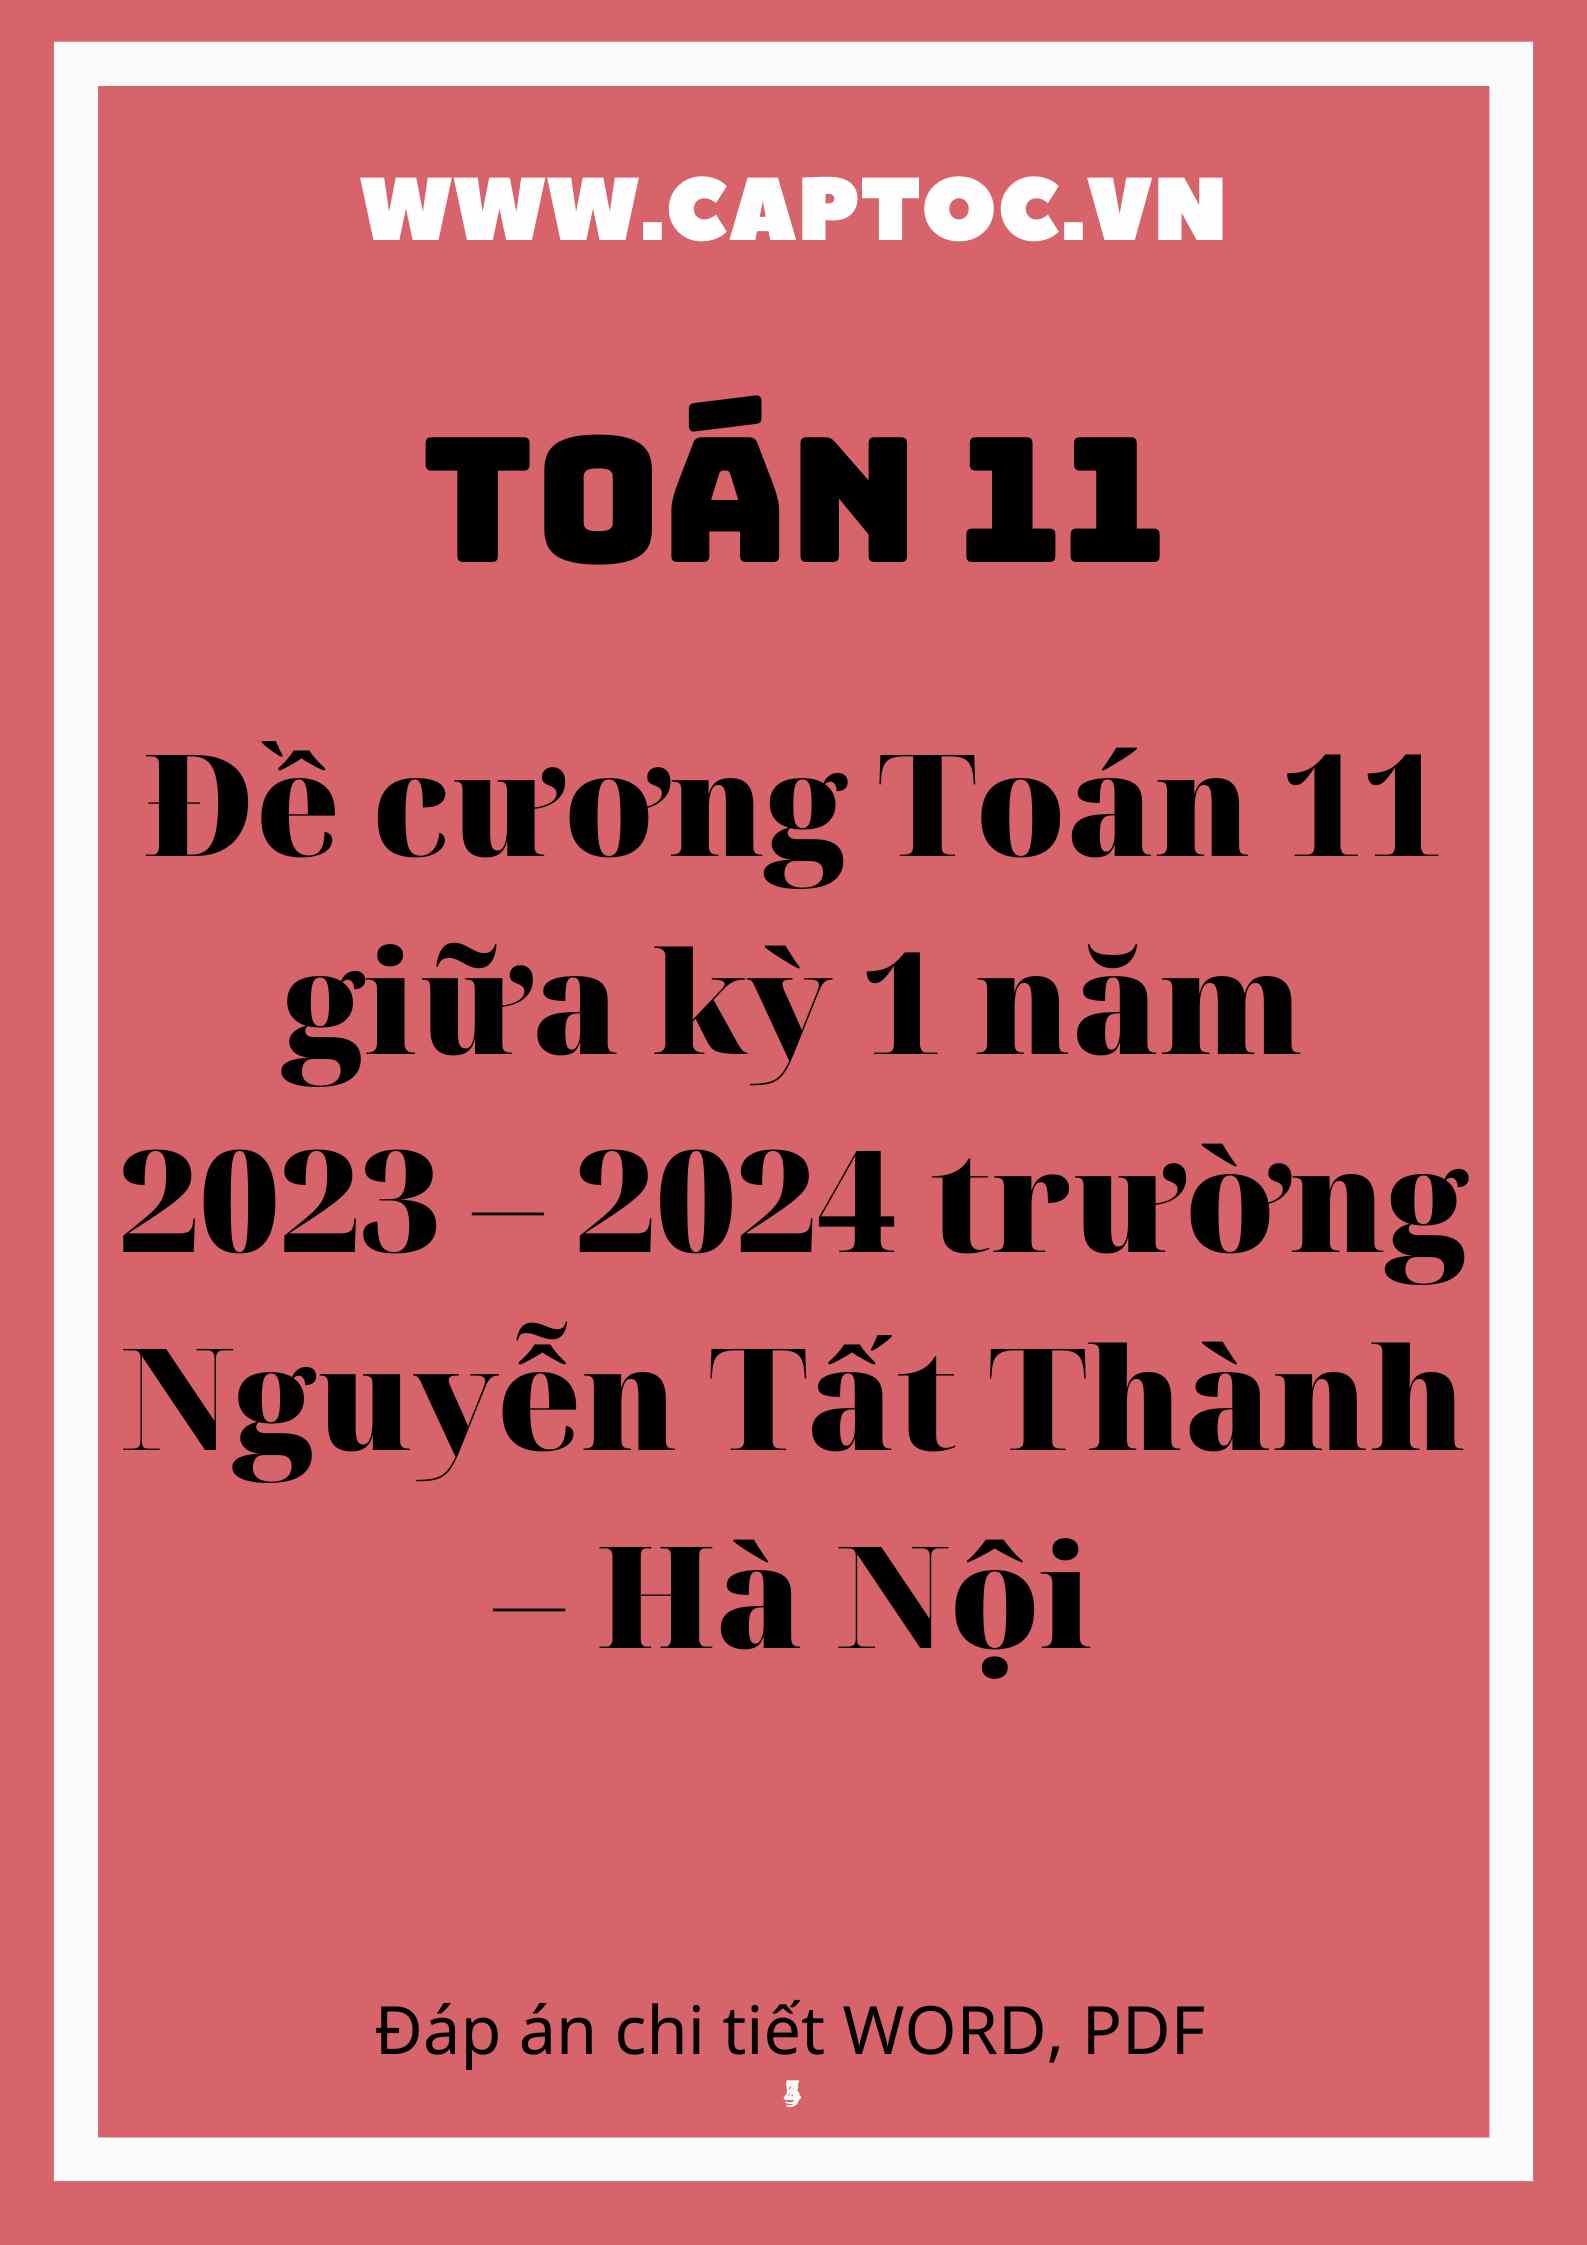 Đề cương Toán 11 giữa kỳ 1 năm 2023 – 2024 trường Nguyễn Tất Thành – Hà Nội